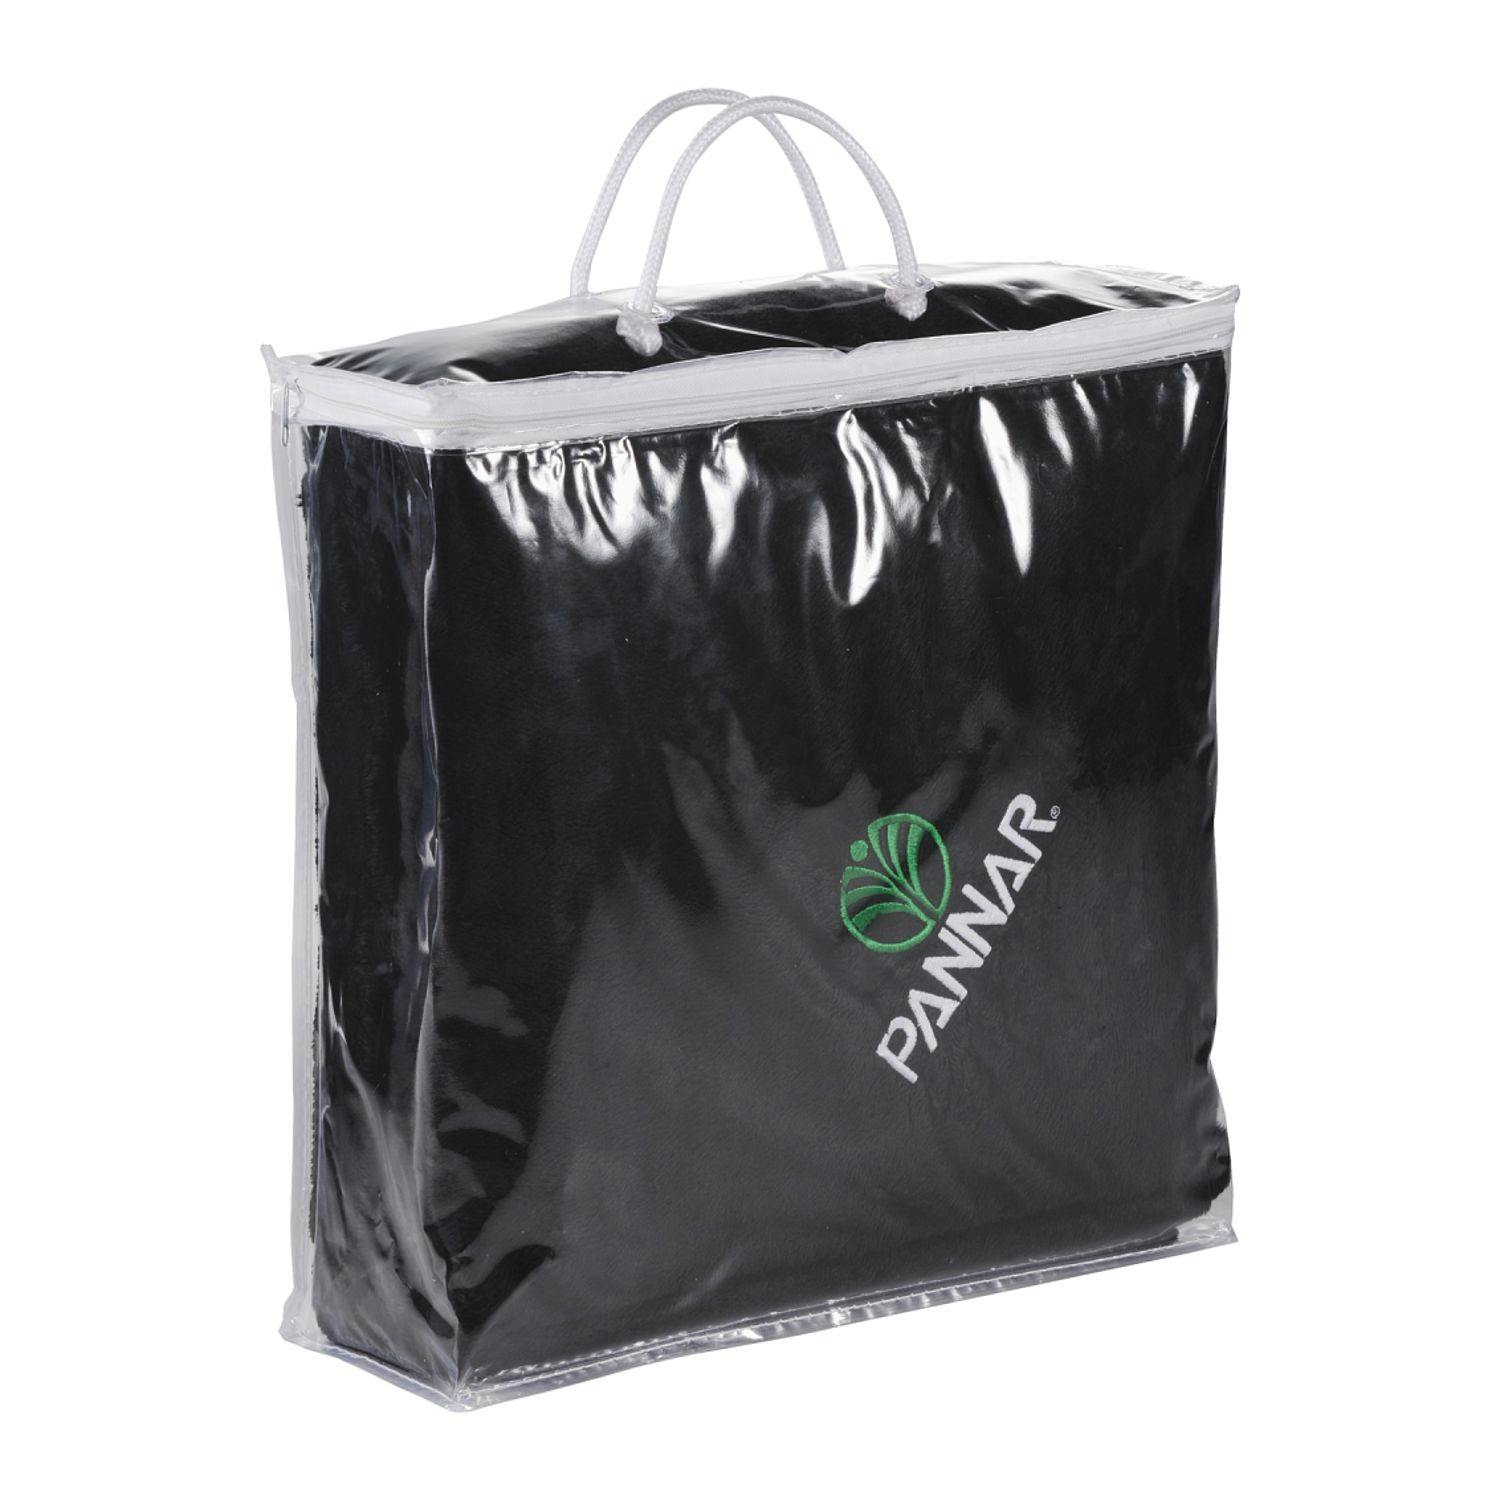 Blanket Storage Bag - additional Image 1